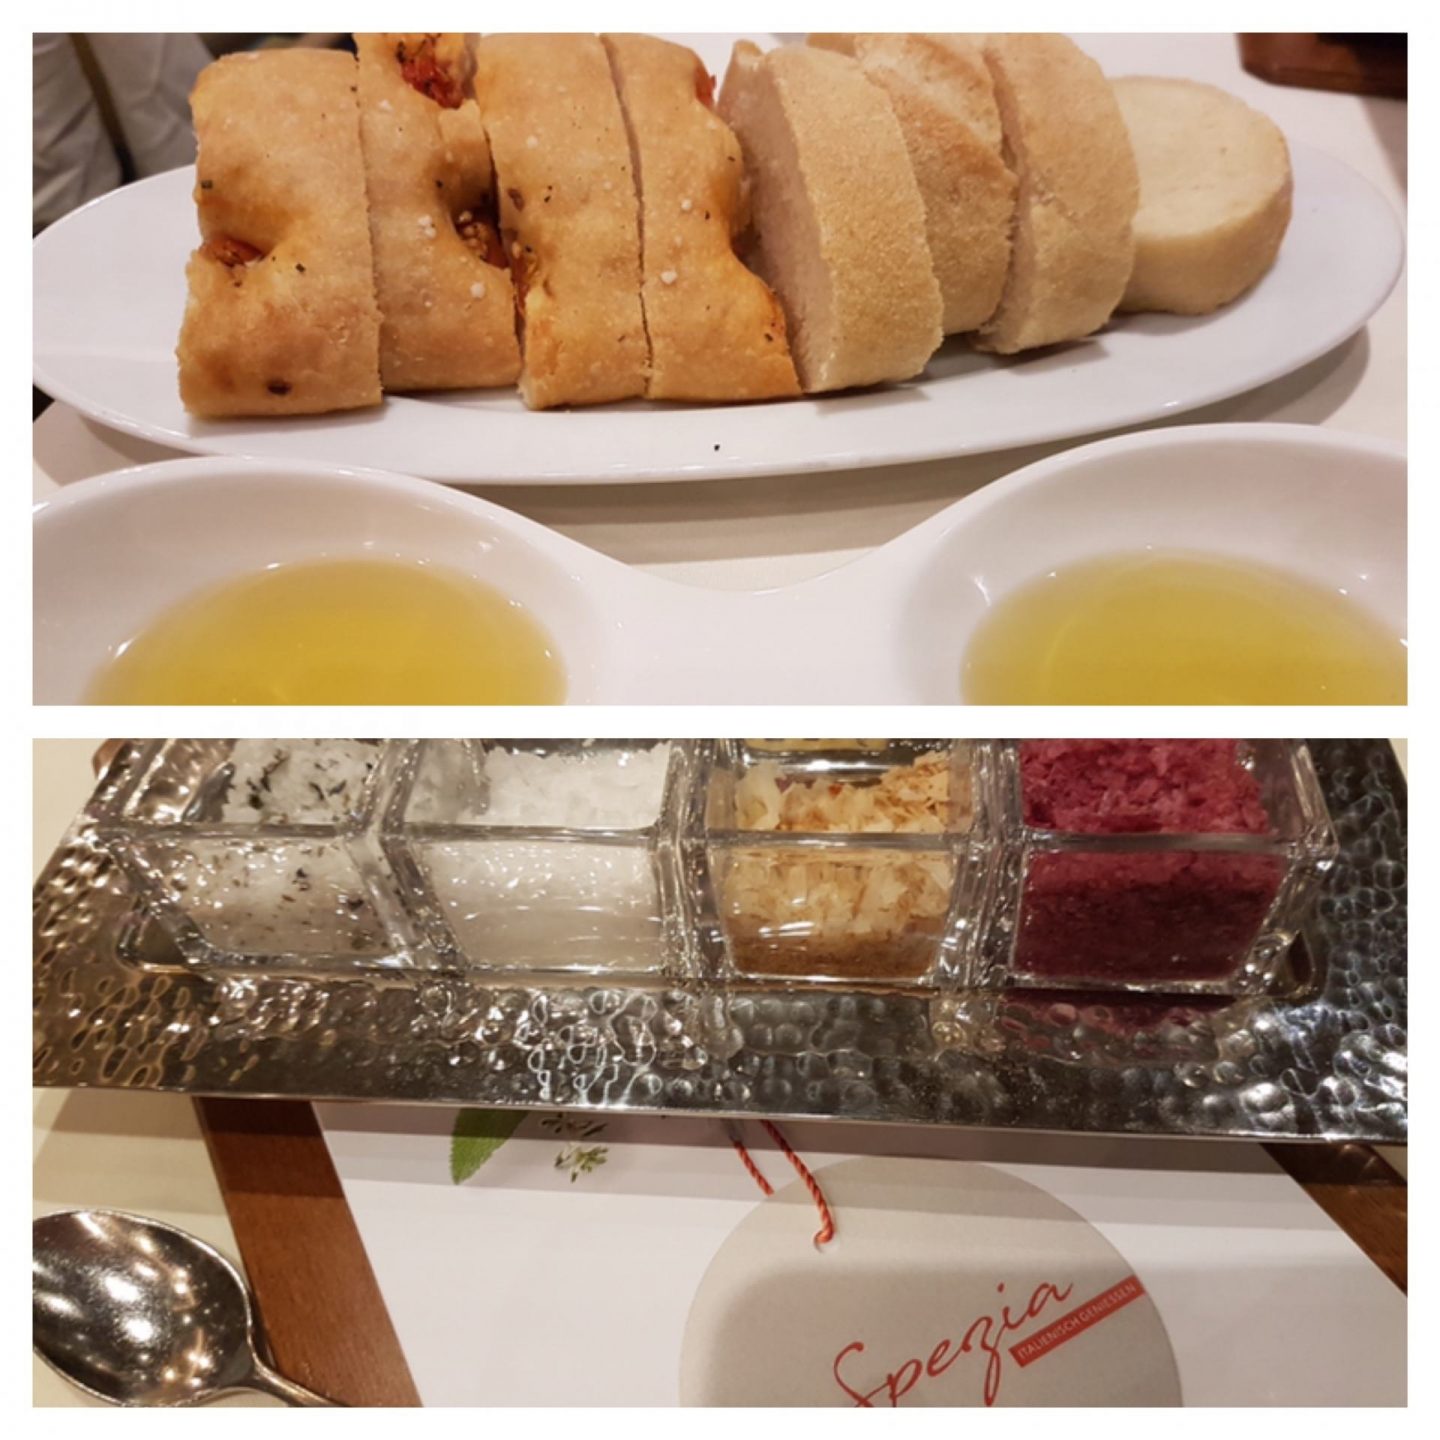 Erfahrung Bewertung Kritik Gourmetpaket Mein Schiff La Spezia Brot und Olivenöl Foodblog Sternestulle